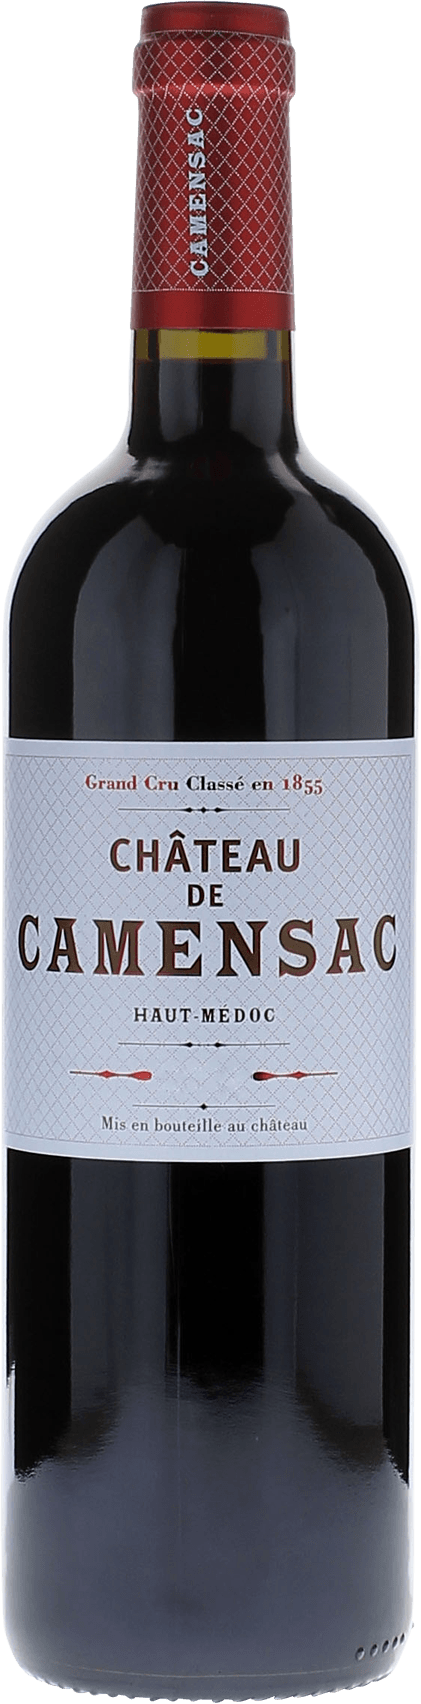 Camensac 1981 5me Grand cru class Mdoc, Bordeaux rouge